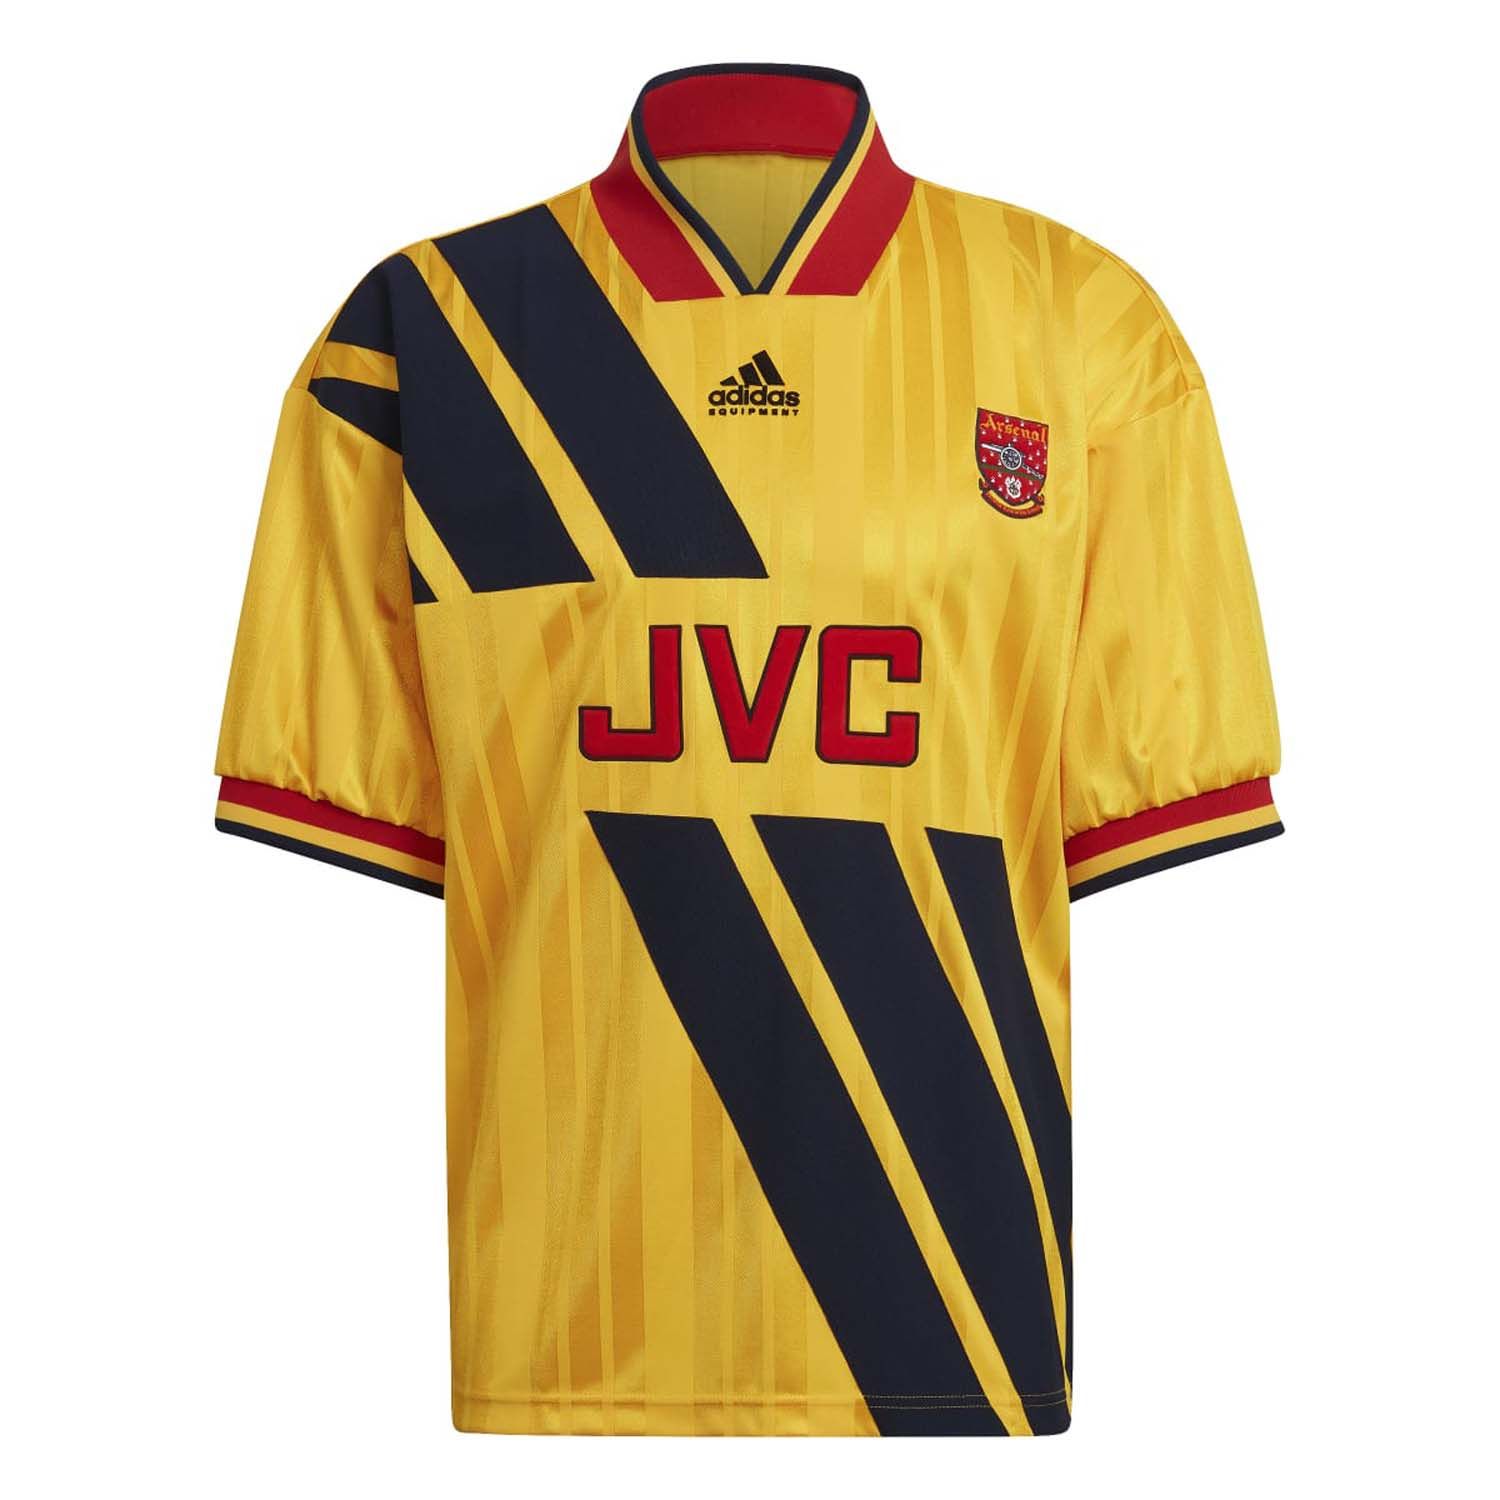 Arsenal FC 93-94 Jersey